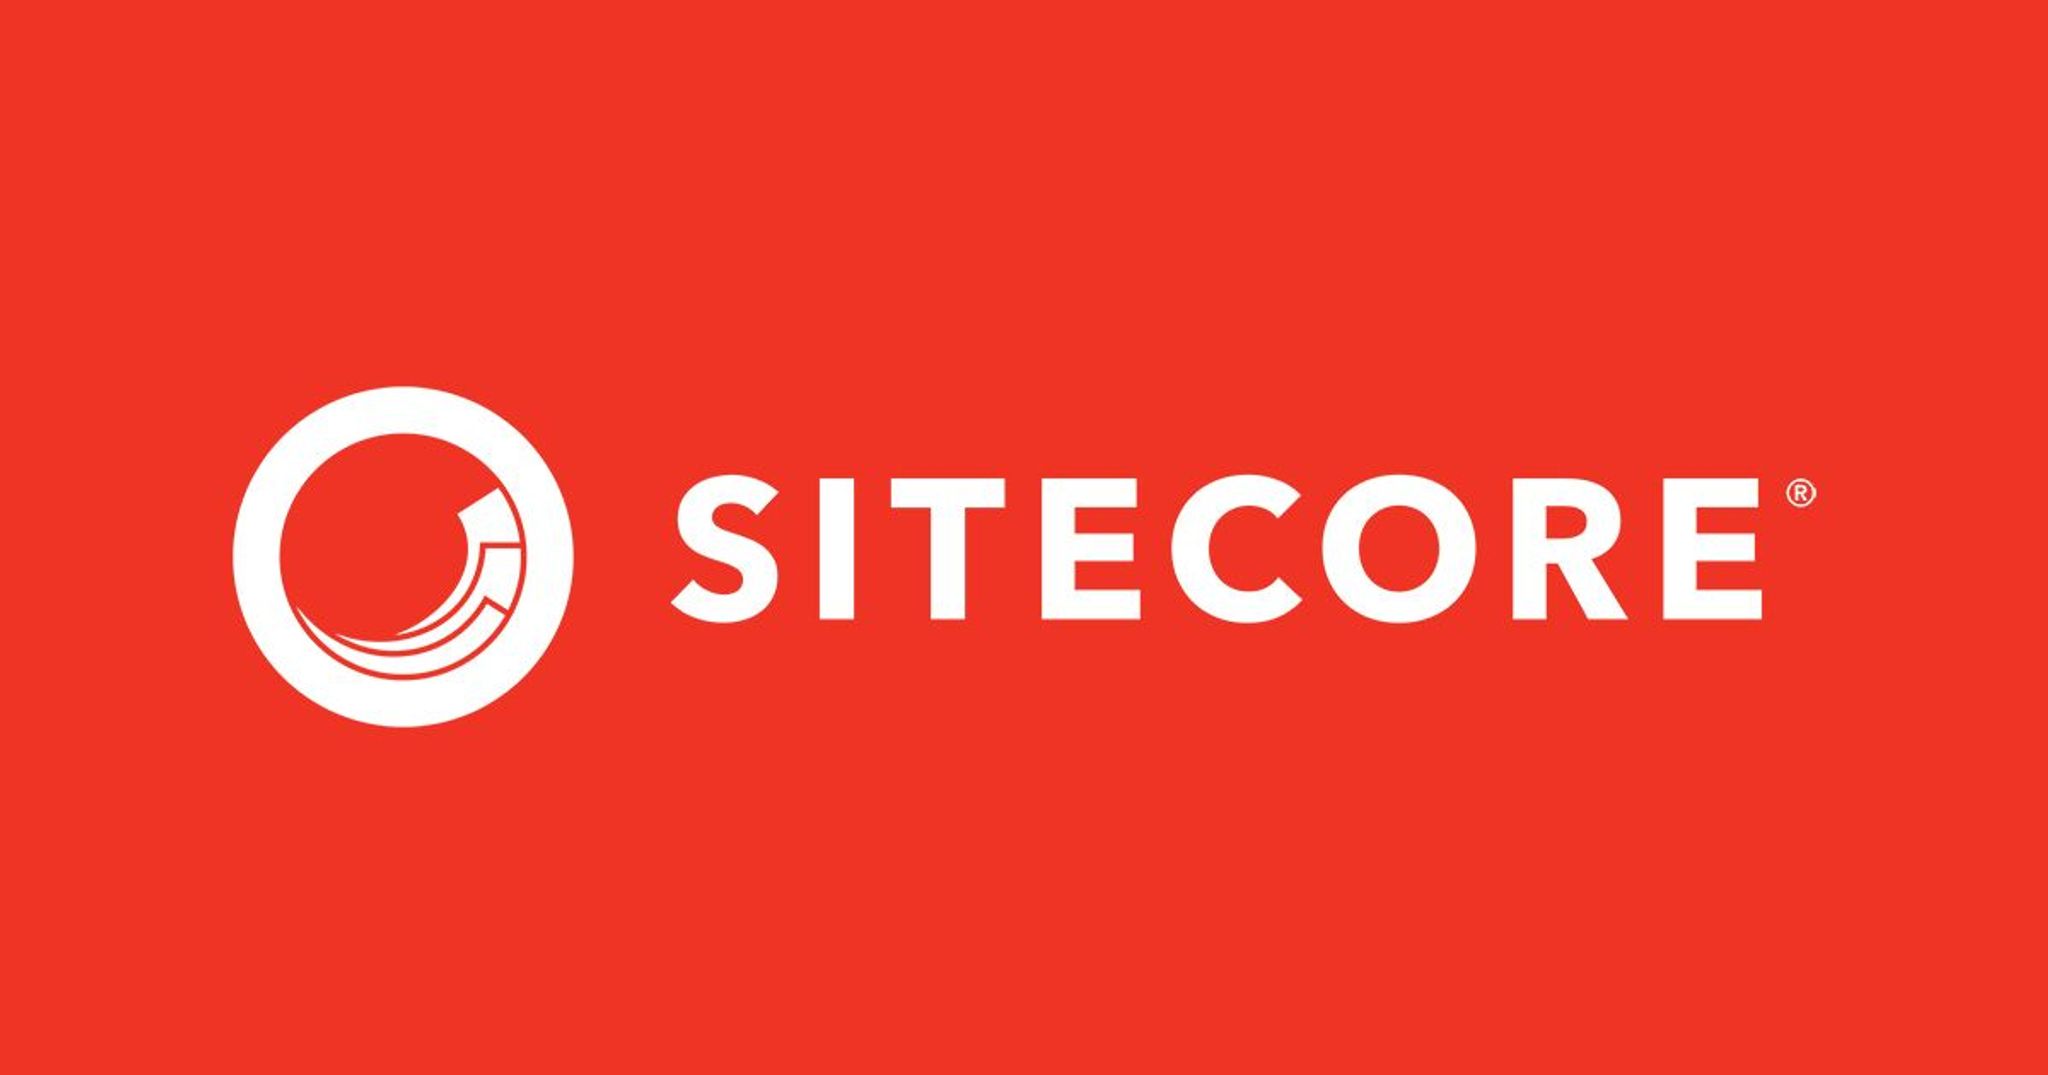 Sitecore Company Logo